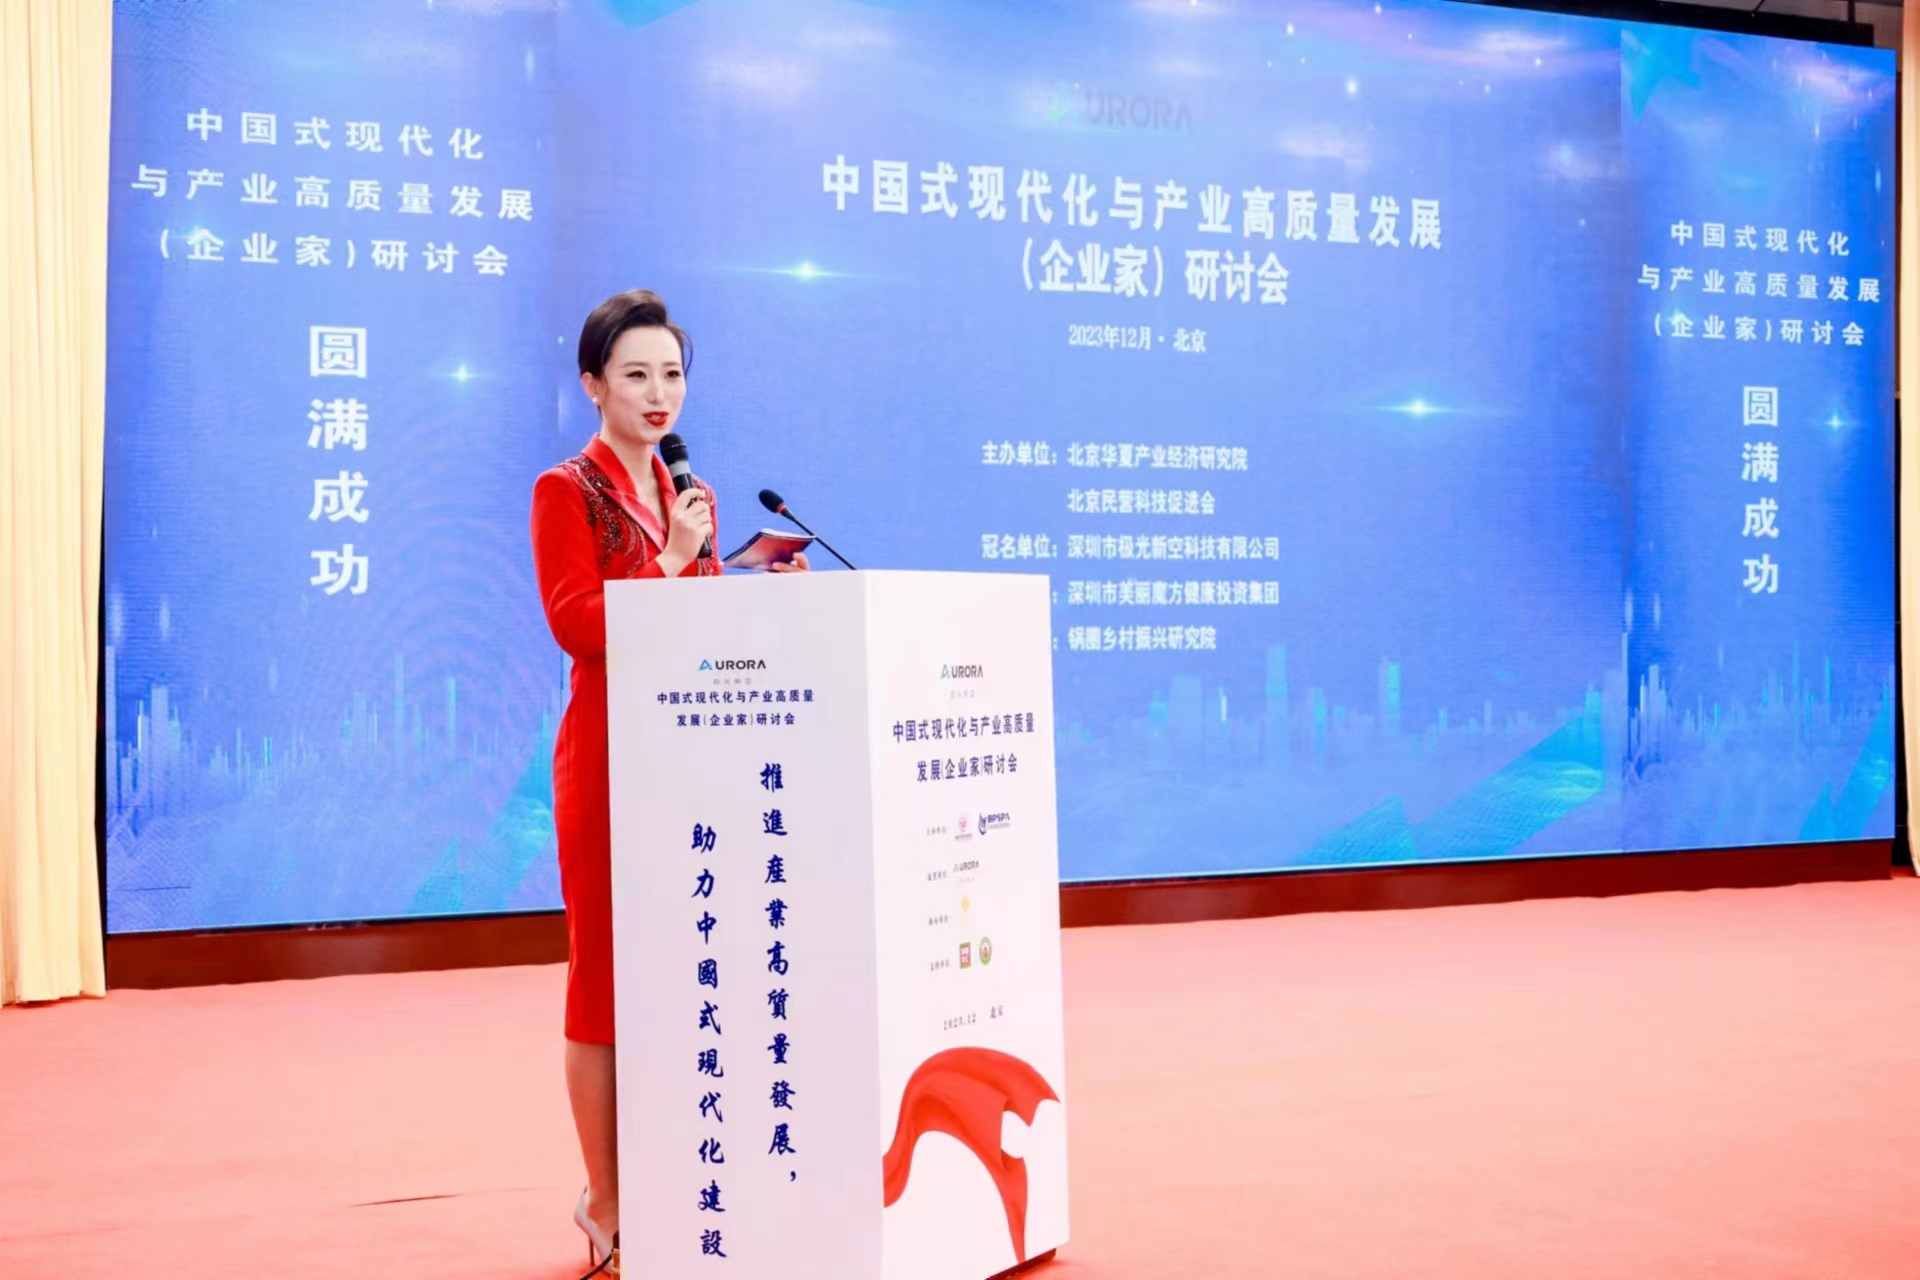  中国式现代化与产业高质量发展（企业家）研讨会日前在京举行 